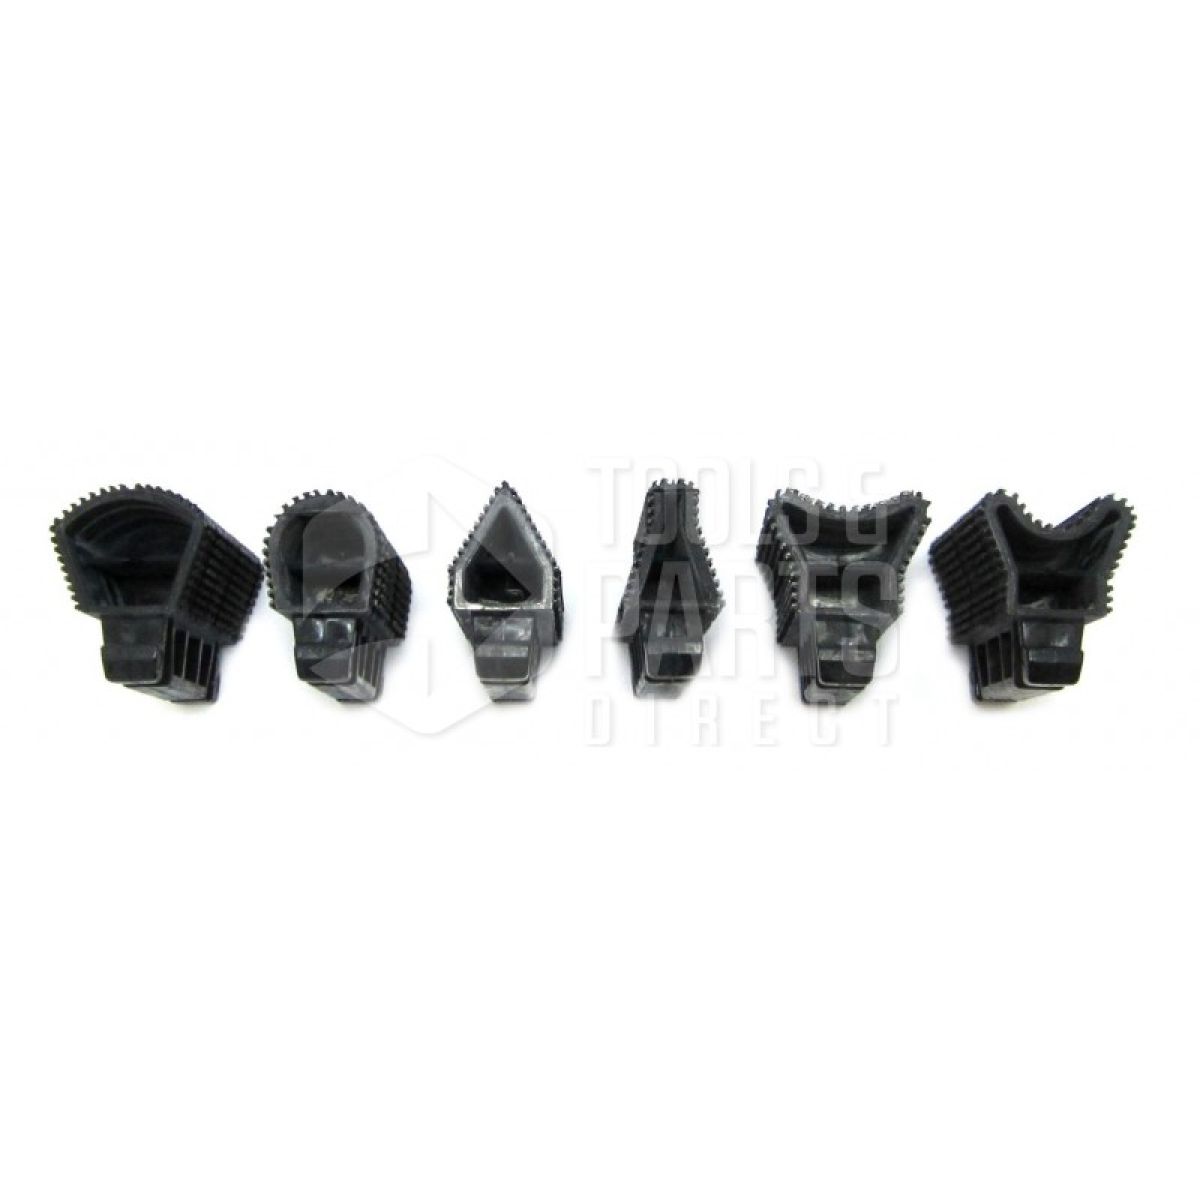 Black & Decker KA2500 Type 1 Palm Grip Sander Spare Parts - Part Shop Direct